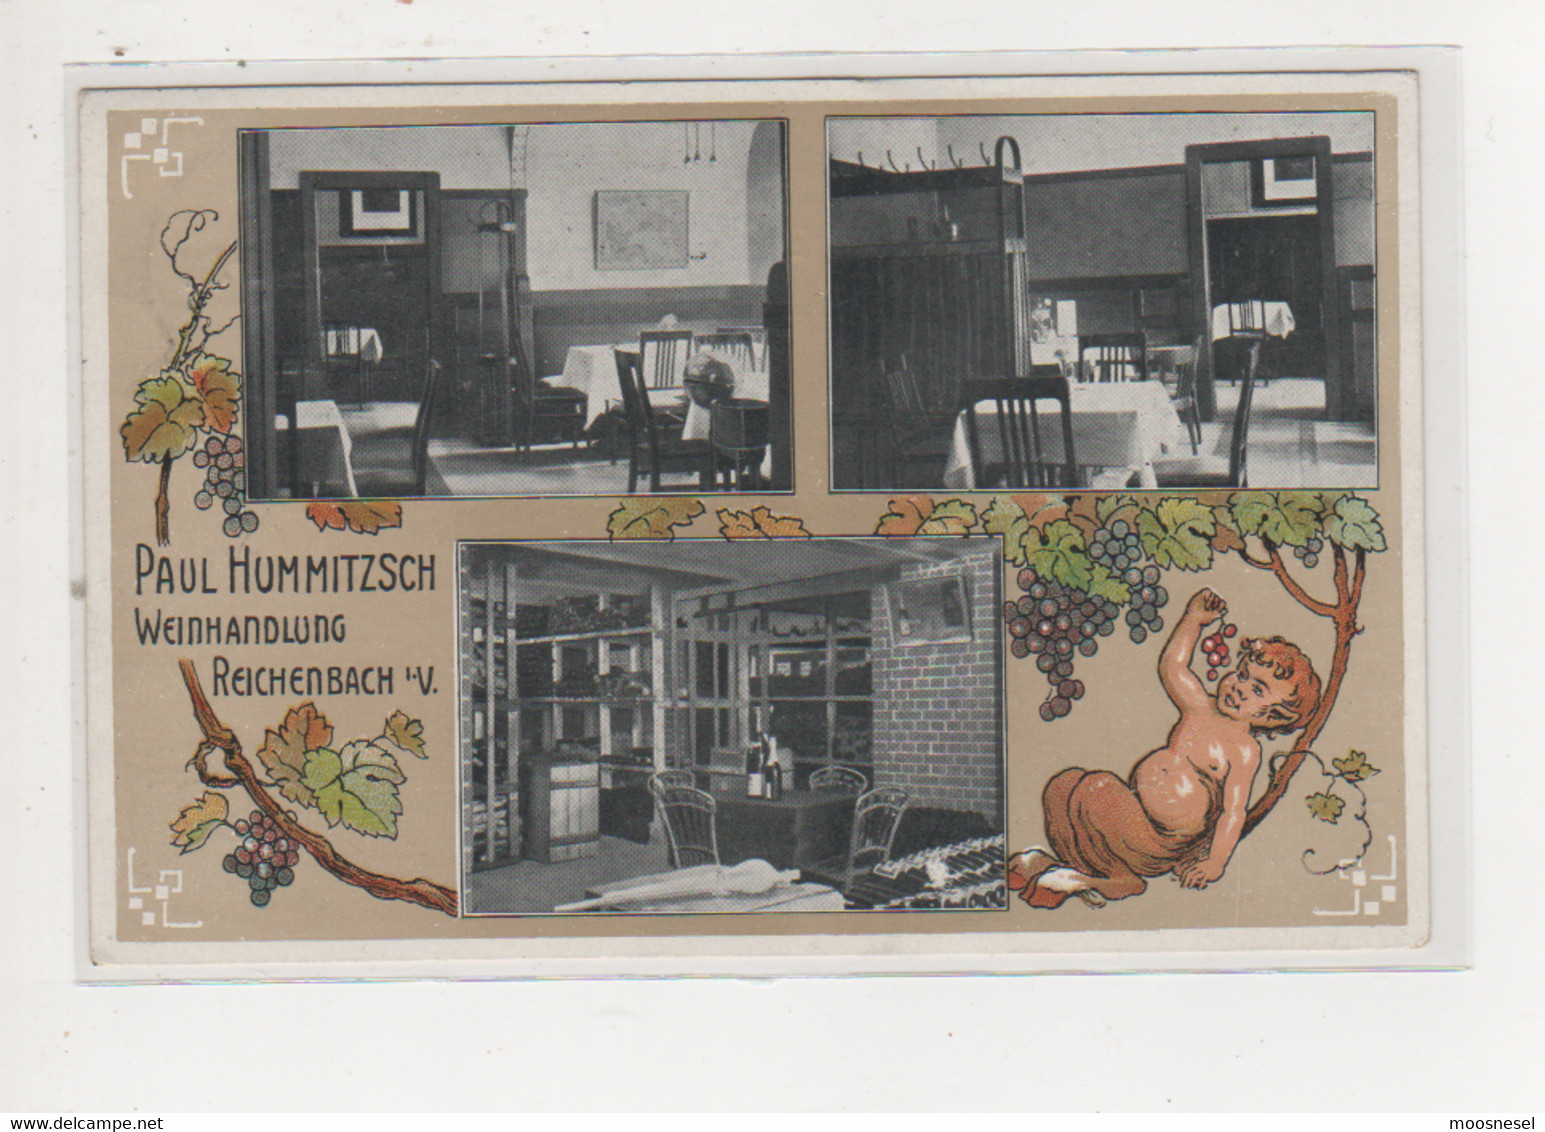 Alte Postkarte - PAUL HUMMITZSCH WEINHANDLUNG REICHENBACH I. V: POSTSTEMPEL 1916 - Reichenbach I. Vogtl.